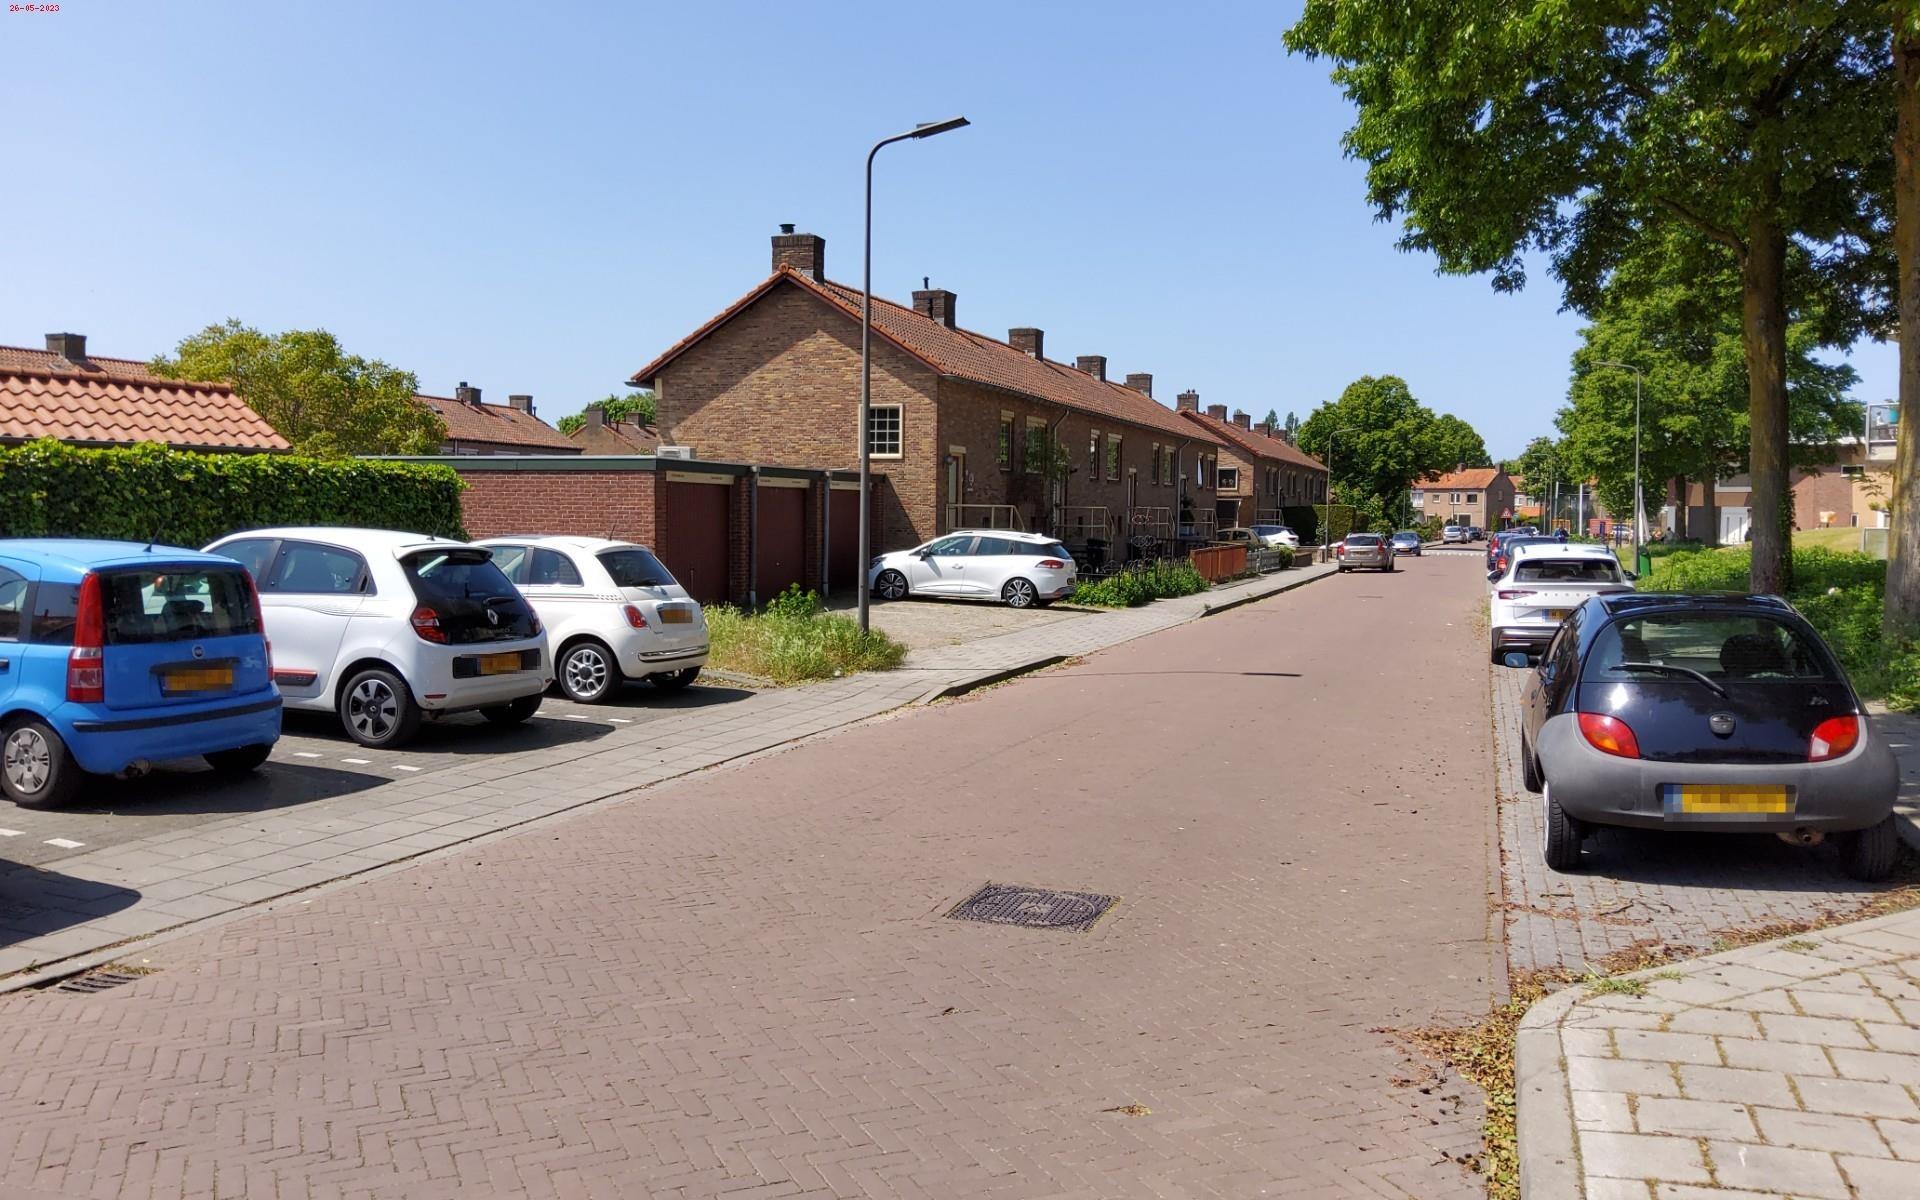 Graaf Ottostraat 44, 6882 DZ Velp, Nederland